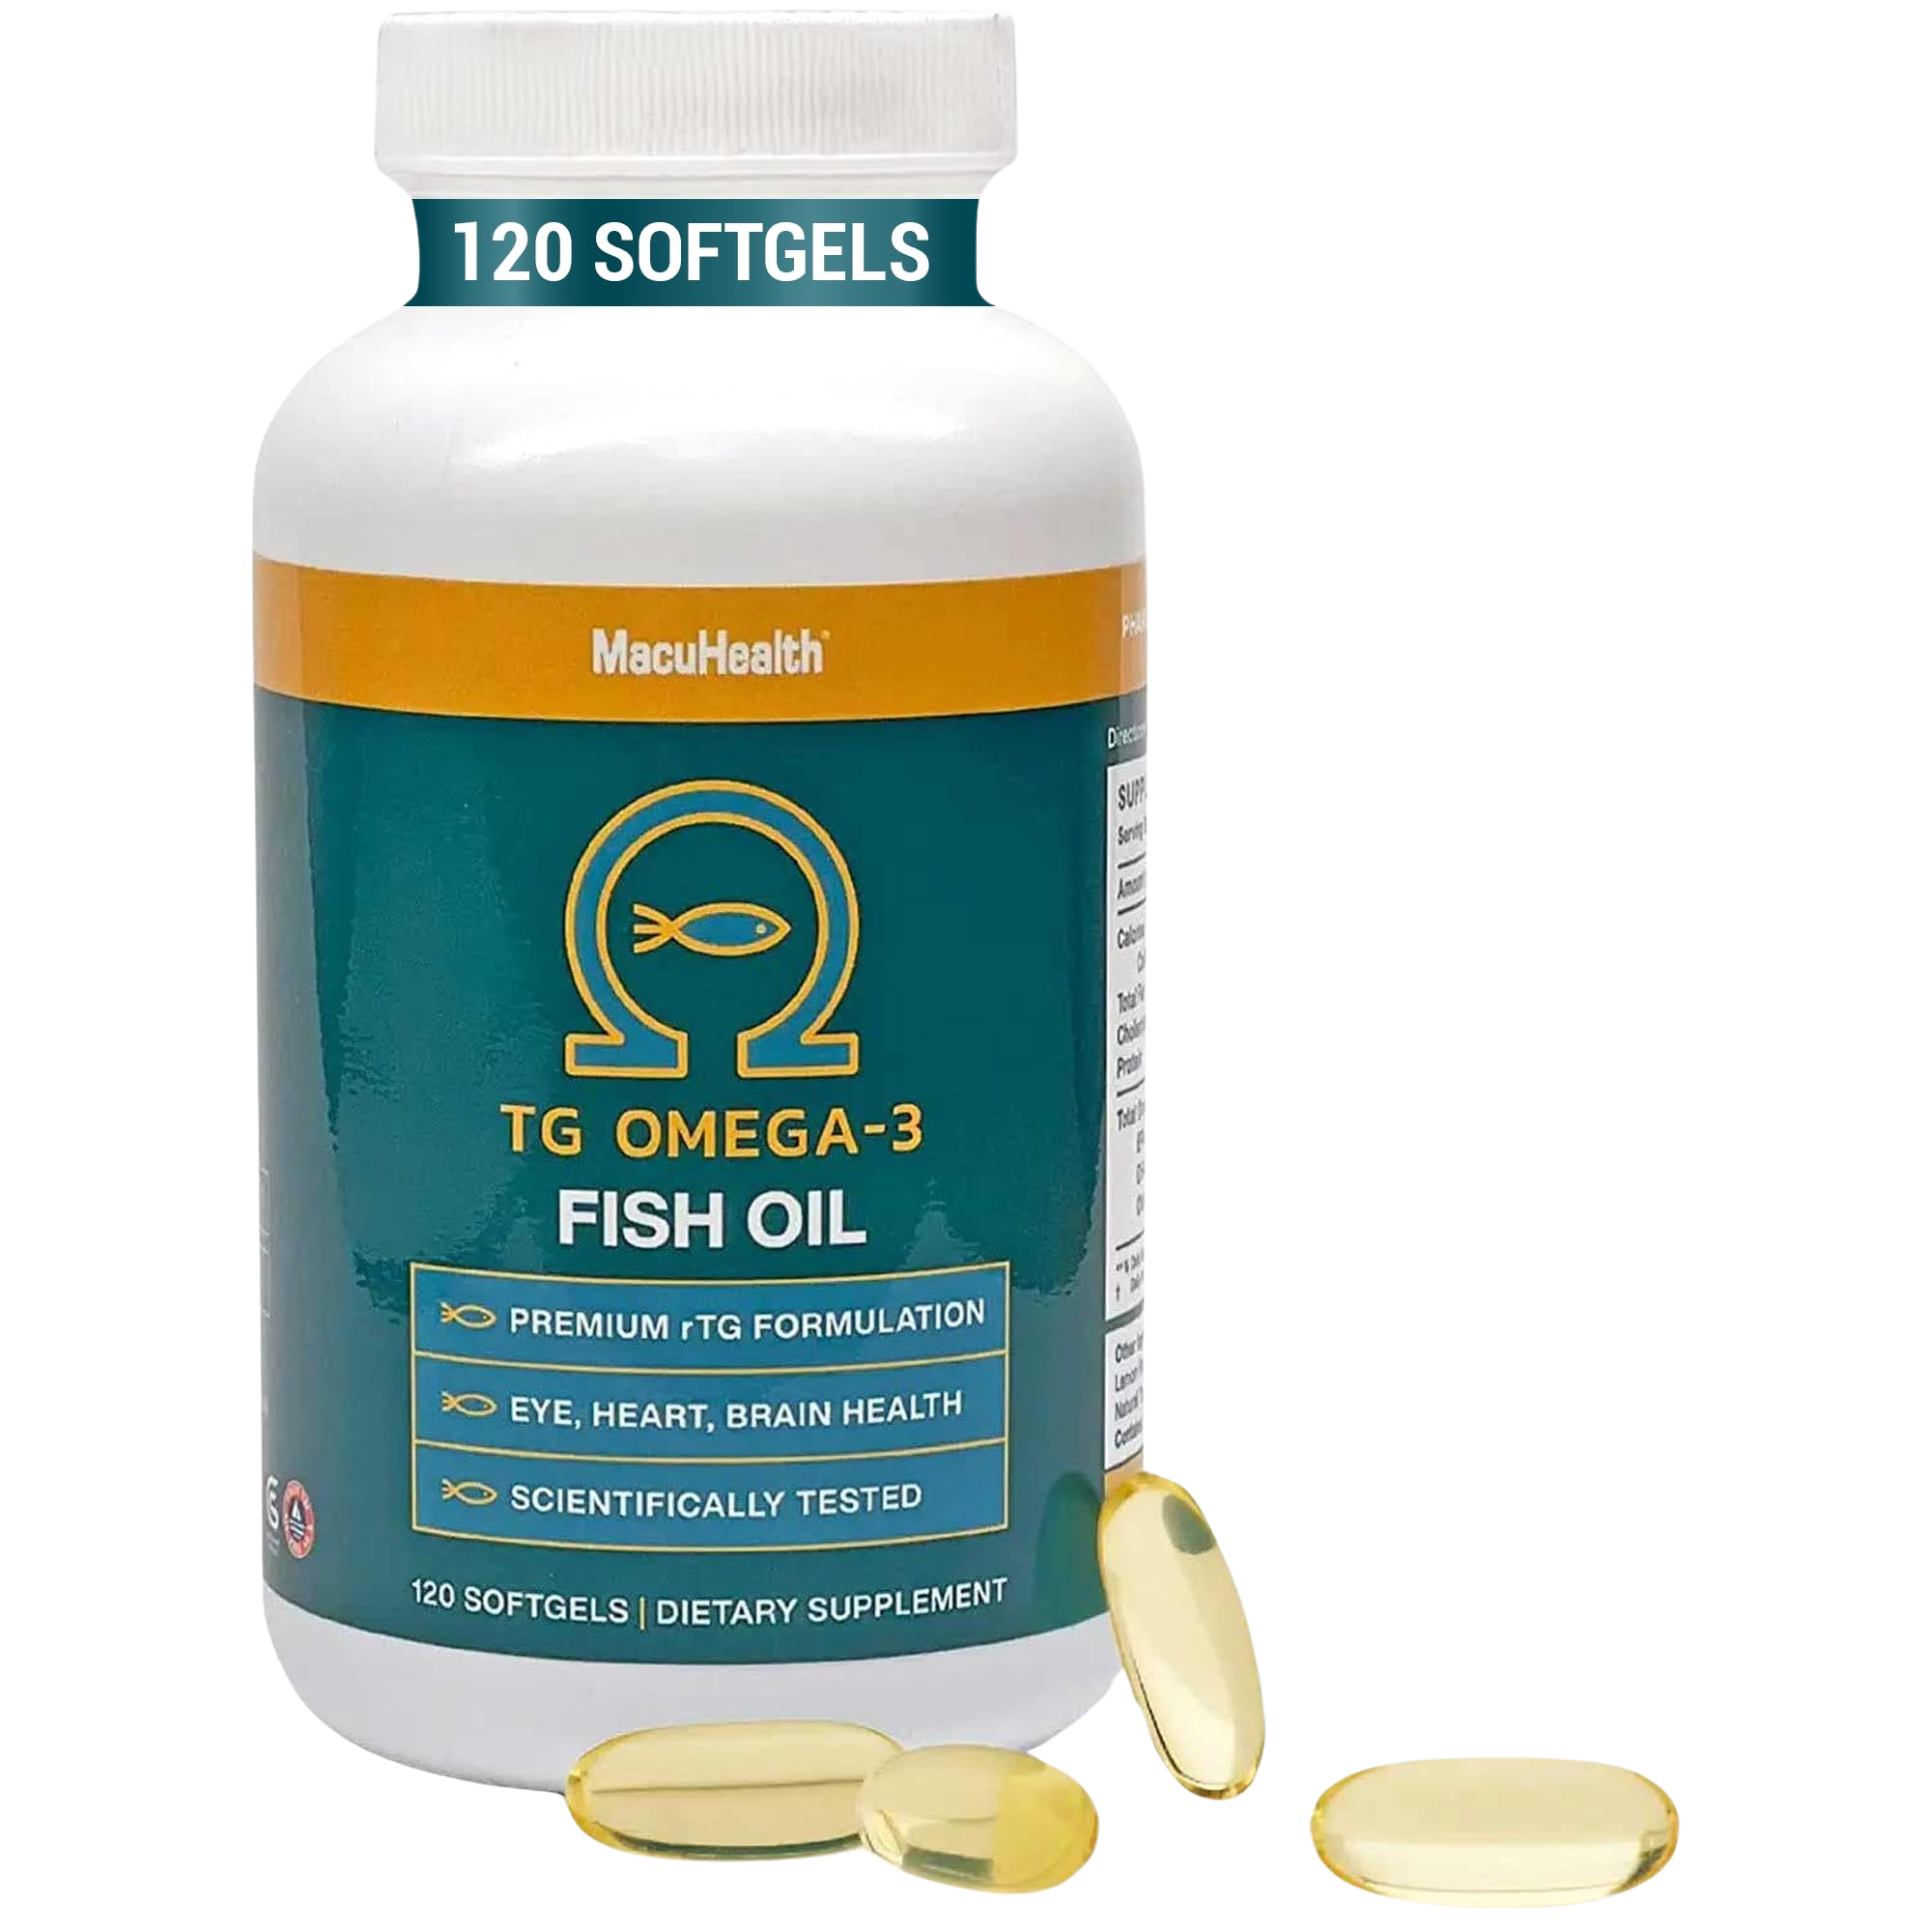 Macuhealth Omega 3 Fish Oil - 1100mg DHA, 1100mg EPA, Eye & Heart Health Supplement